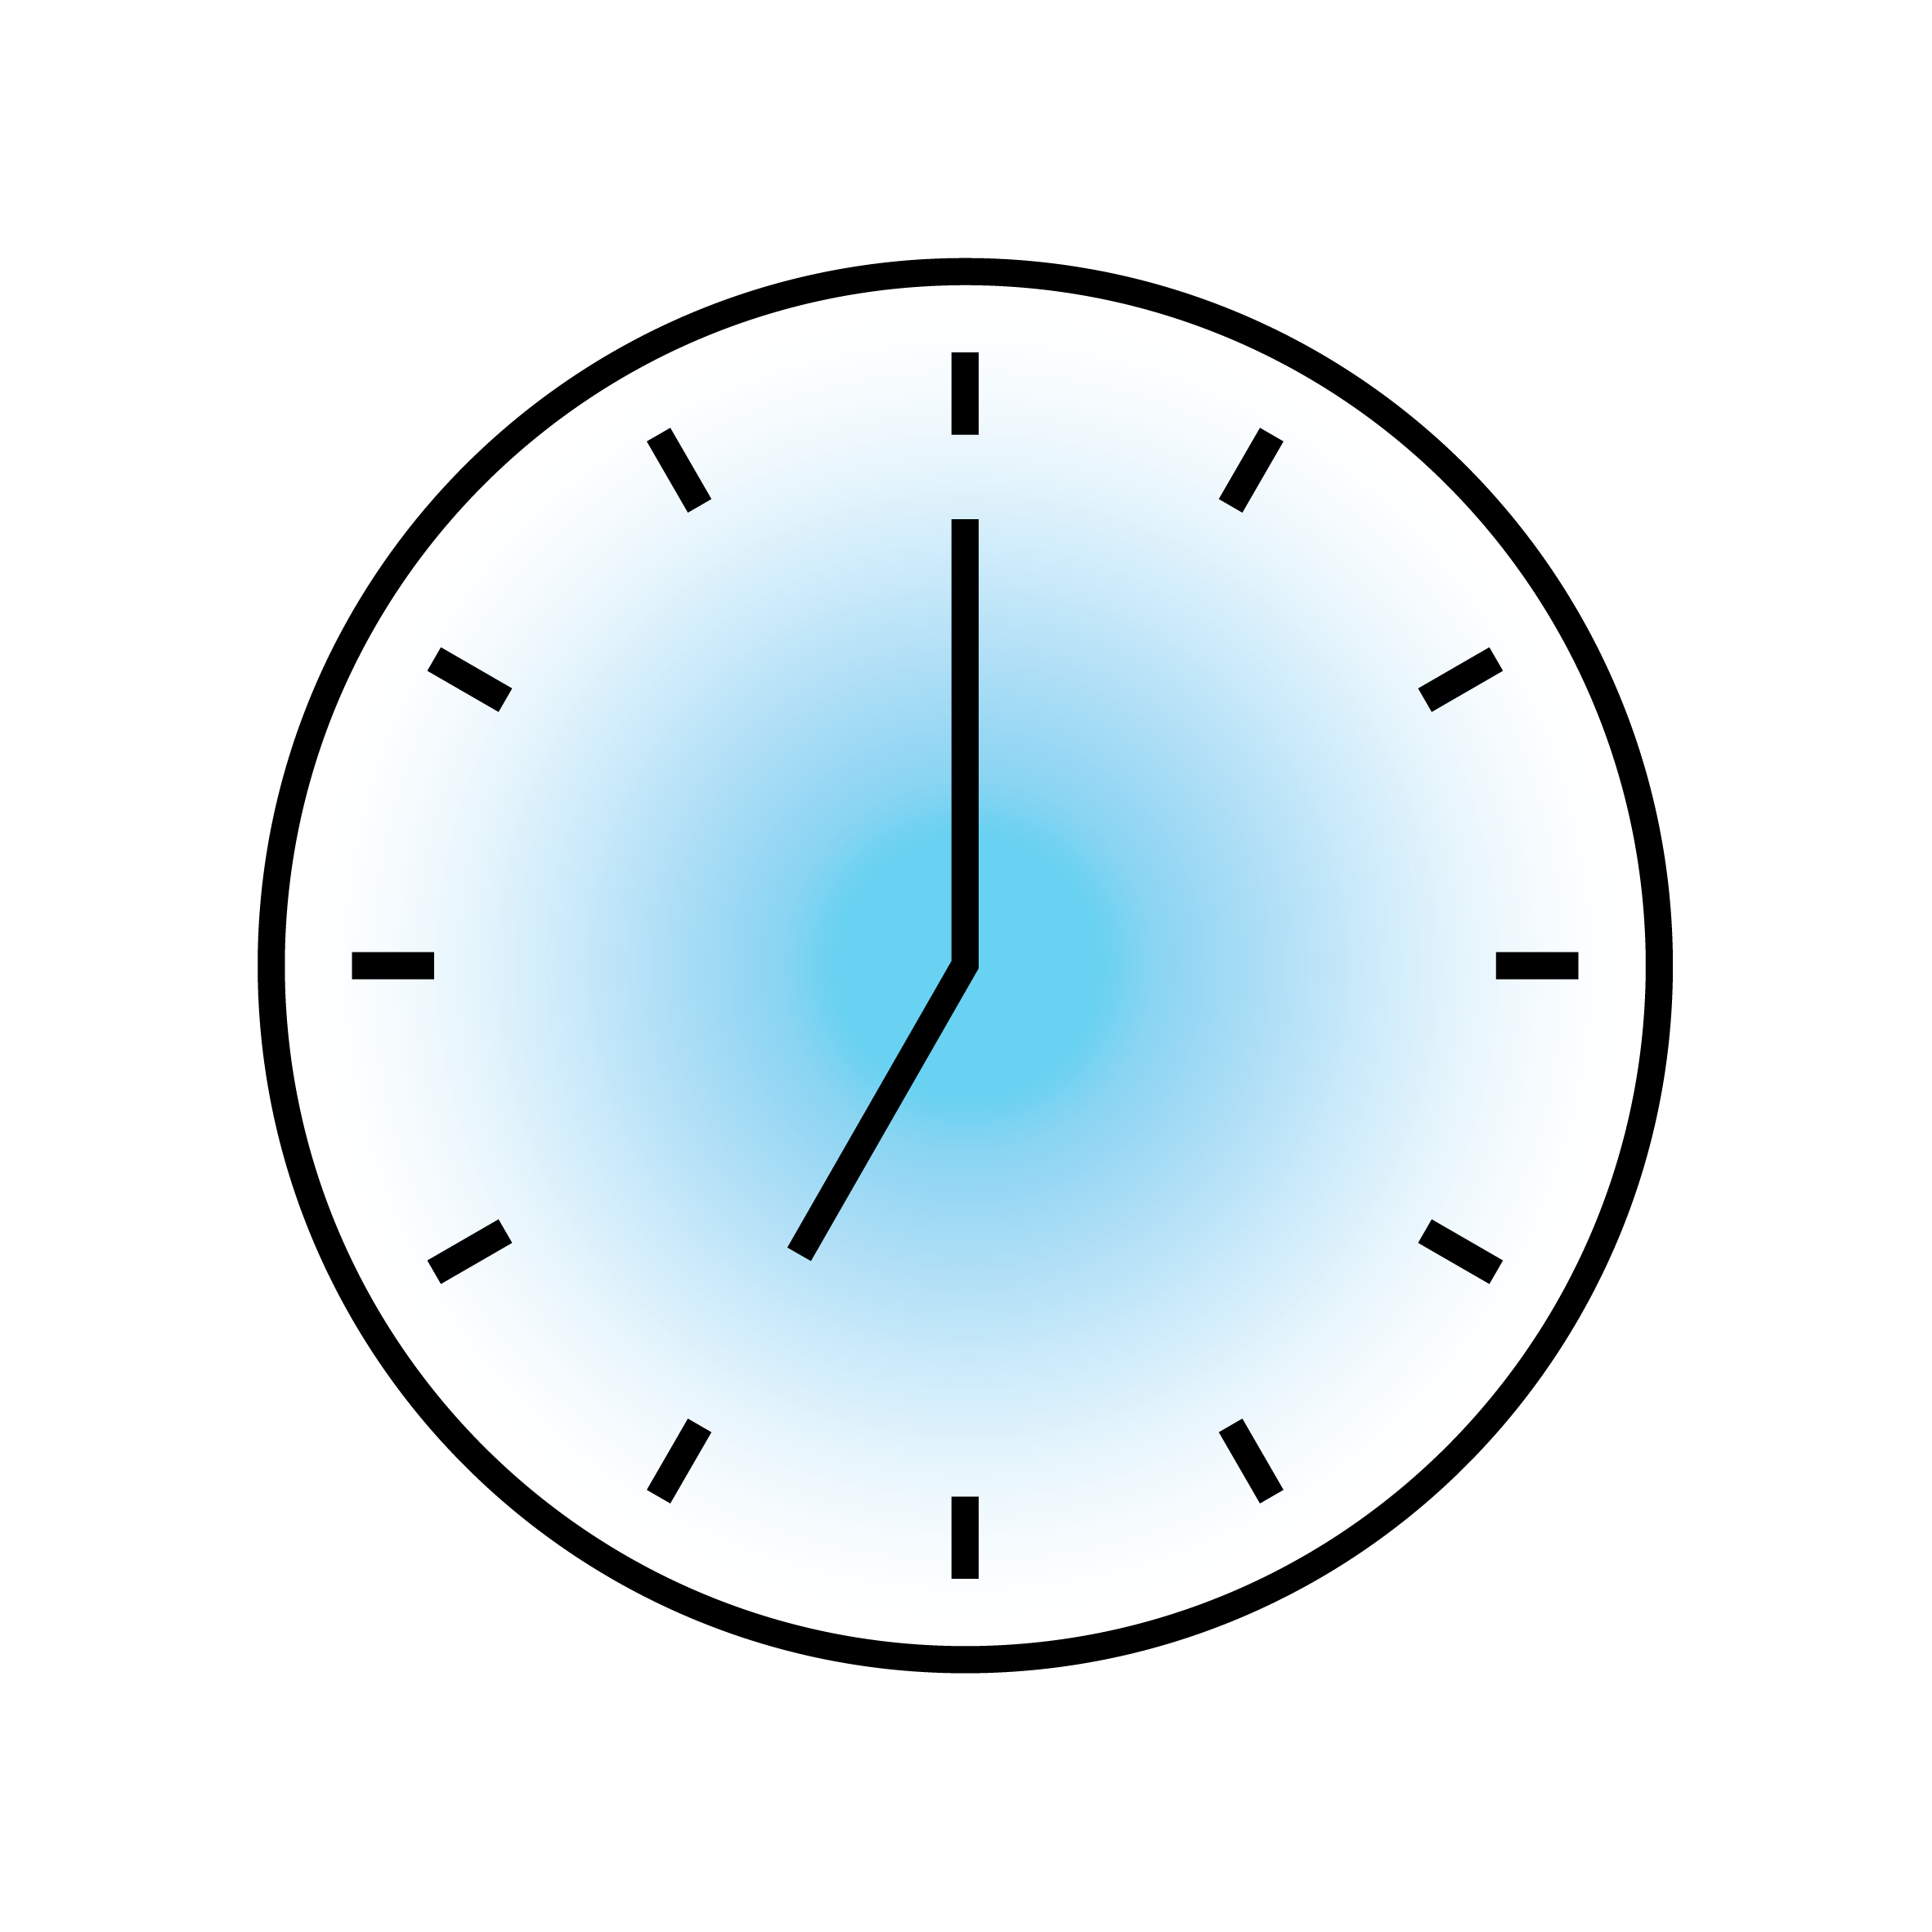 Alt-Text: "Vektorgrafik einer simplen analogen Uhr mit blauem Zifferblatt, die 10:10 Uhr zeigt."